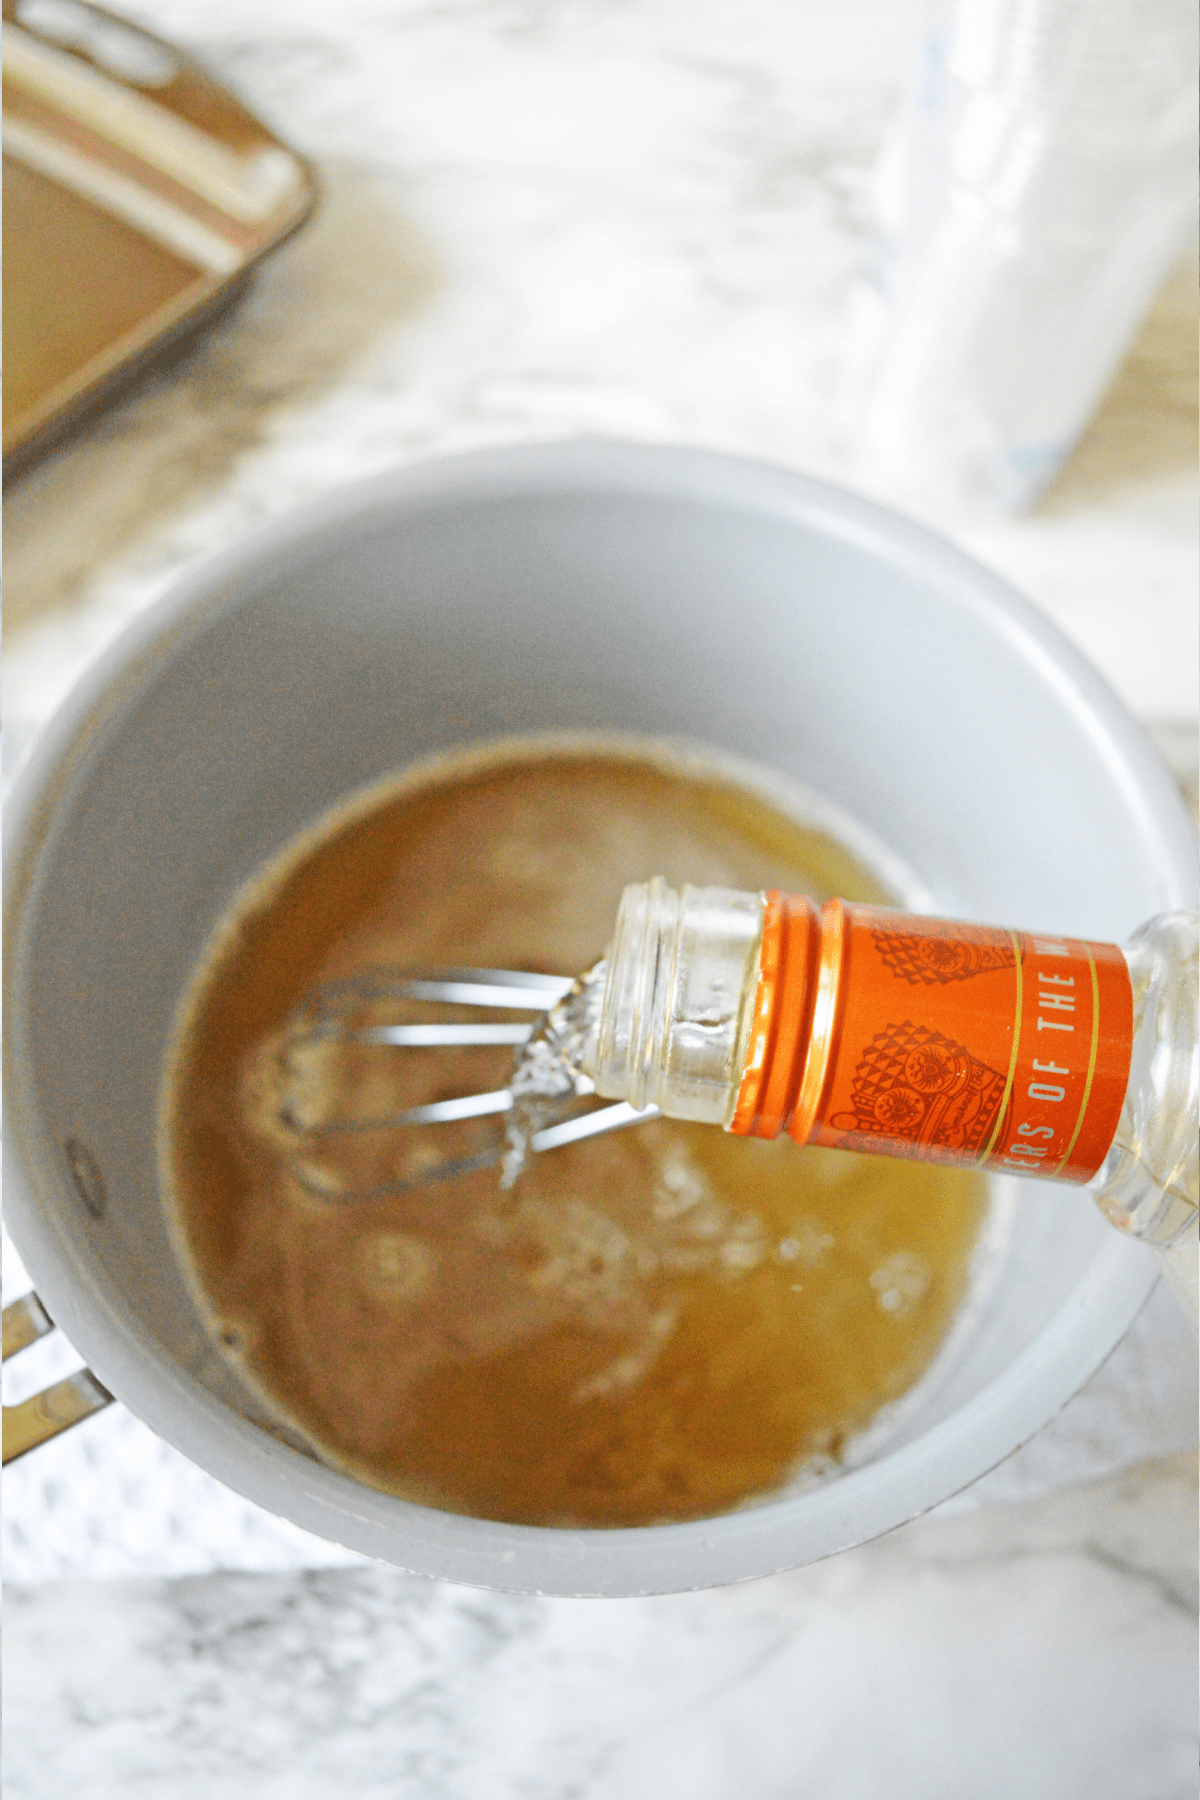 Pouring caramel vodka into cream soda mixture